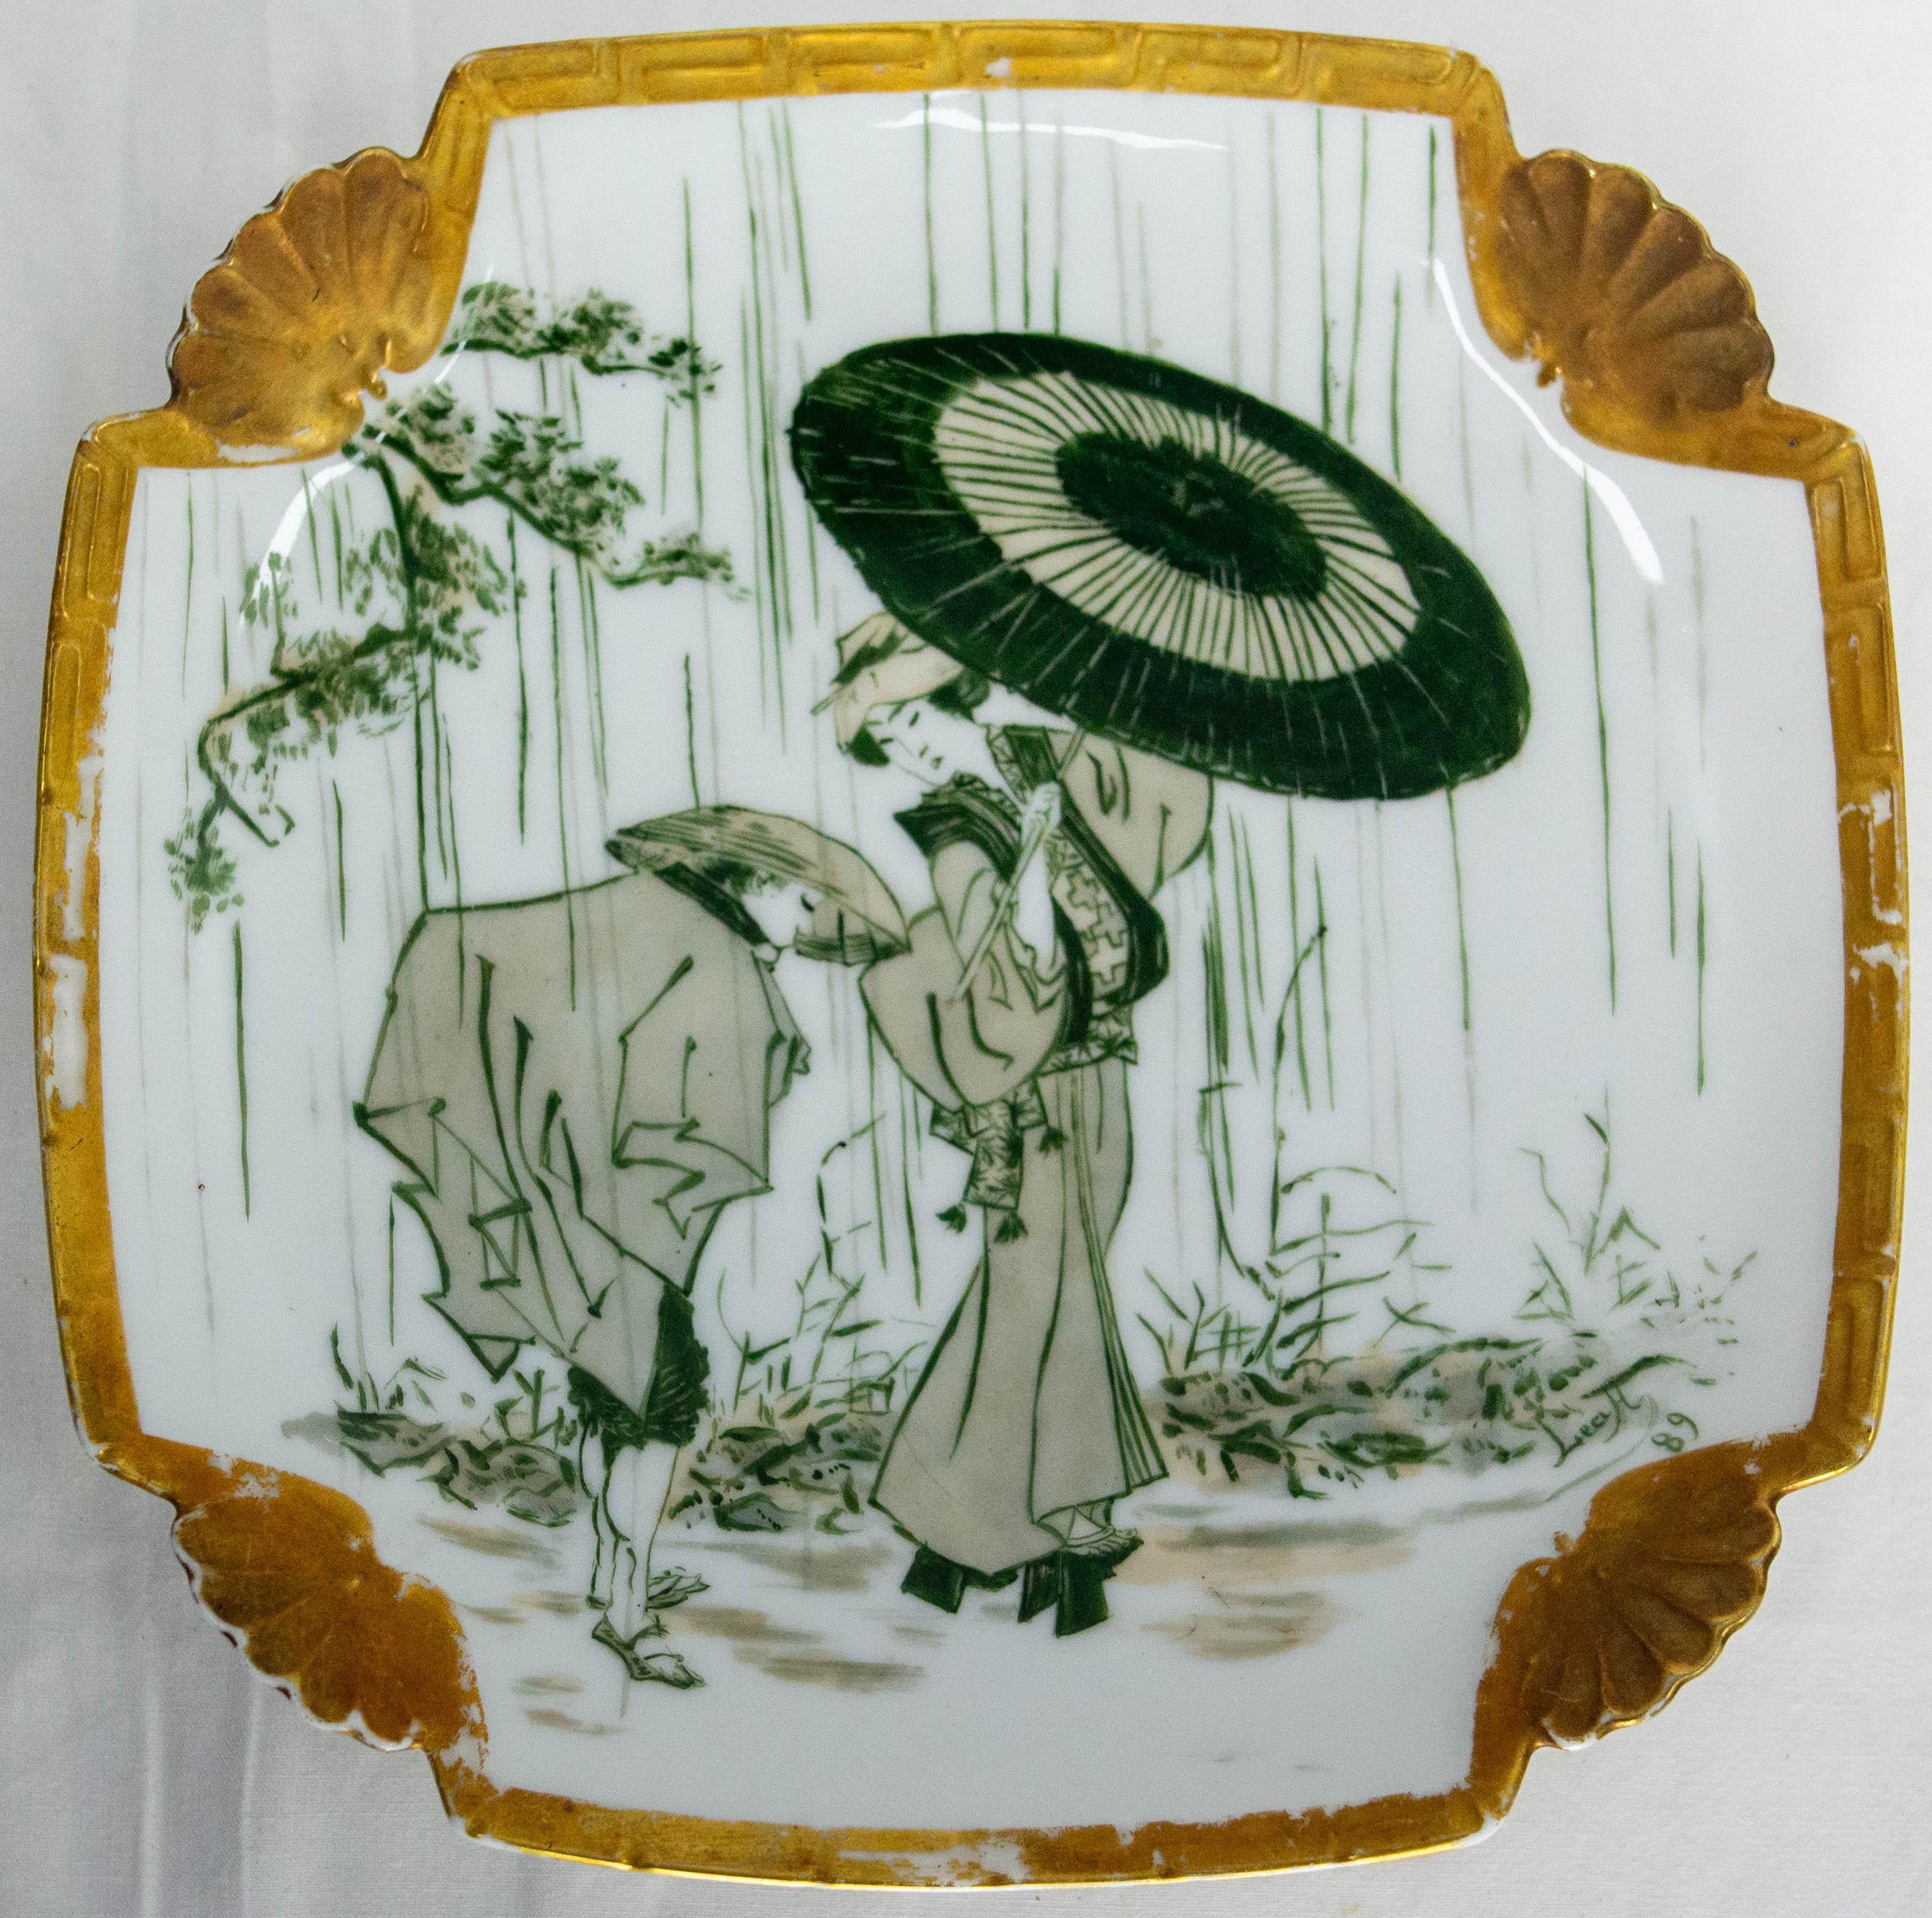 Assiette de forme carrée dans le style japonais typique de l'engouement de l'Europe du XIXe siècle pour les cultures orientales.
Céramique décorée d'une geisha portant un parapluie sous la pluie et de branches de cerisier en fleurs.
Fabriqué vers le